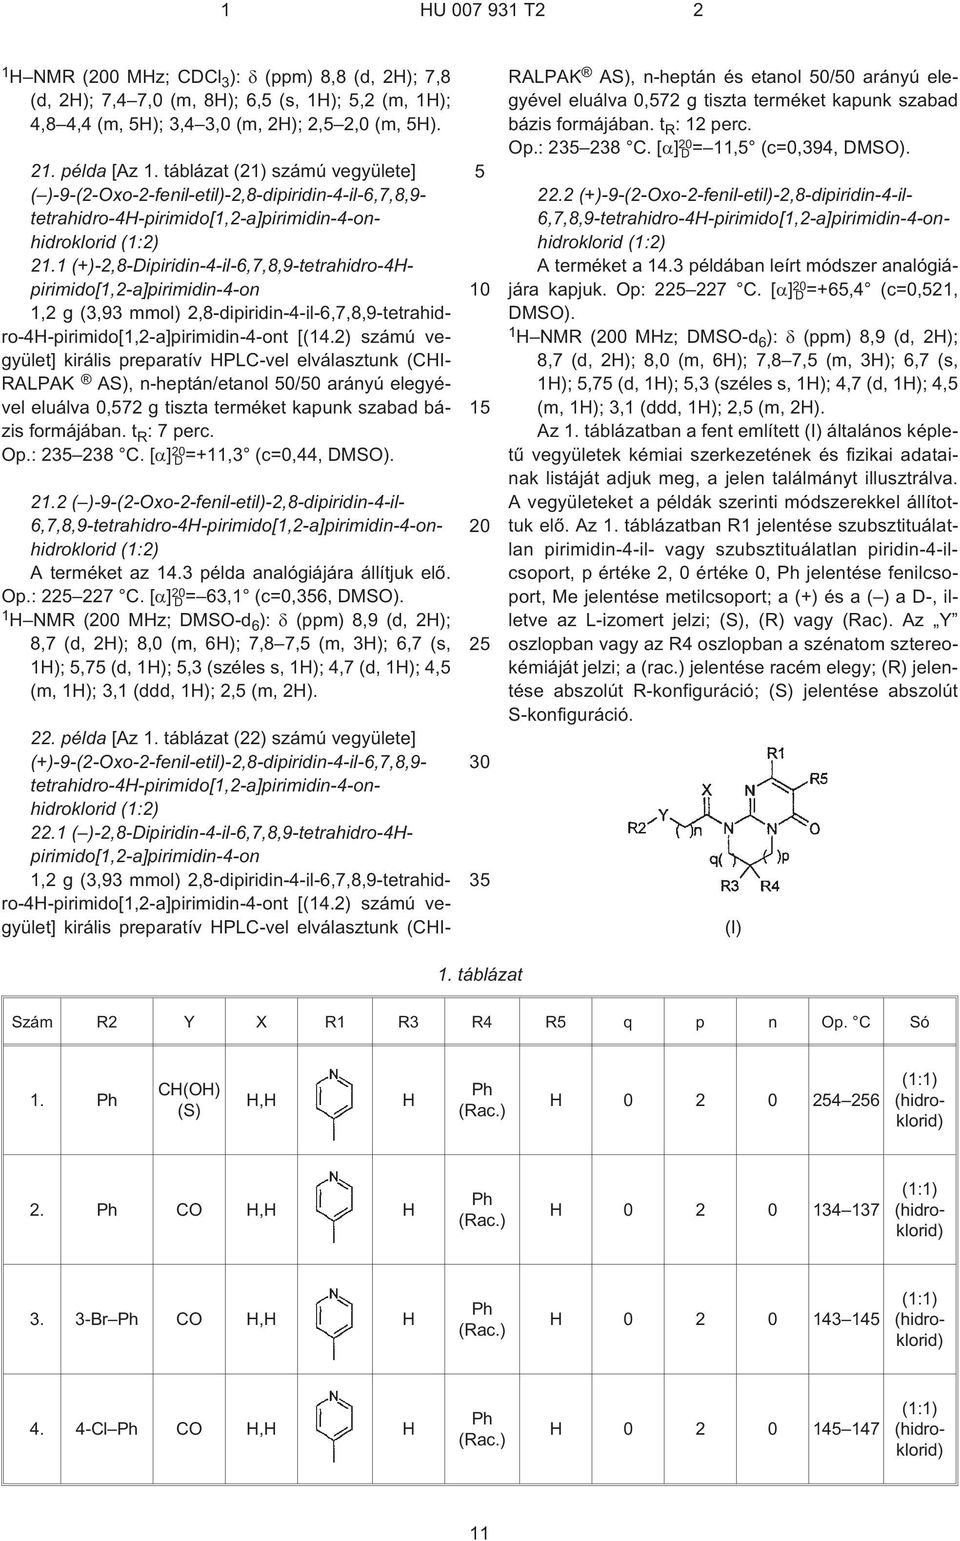 1 (+)-2,8-Dipiridin-4-il-6,7,8,9-tetrahidro-4pirimido[1,2¹a]pirimidin-4-on 1,2 g (3,93 mmol) 2,8-dipiridin-4-il-6,7,8,9-tetrahidro-4-pirimido[1,2¹a]pirimidin-4-ont [(14.